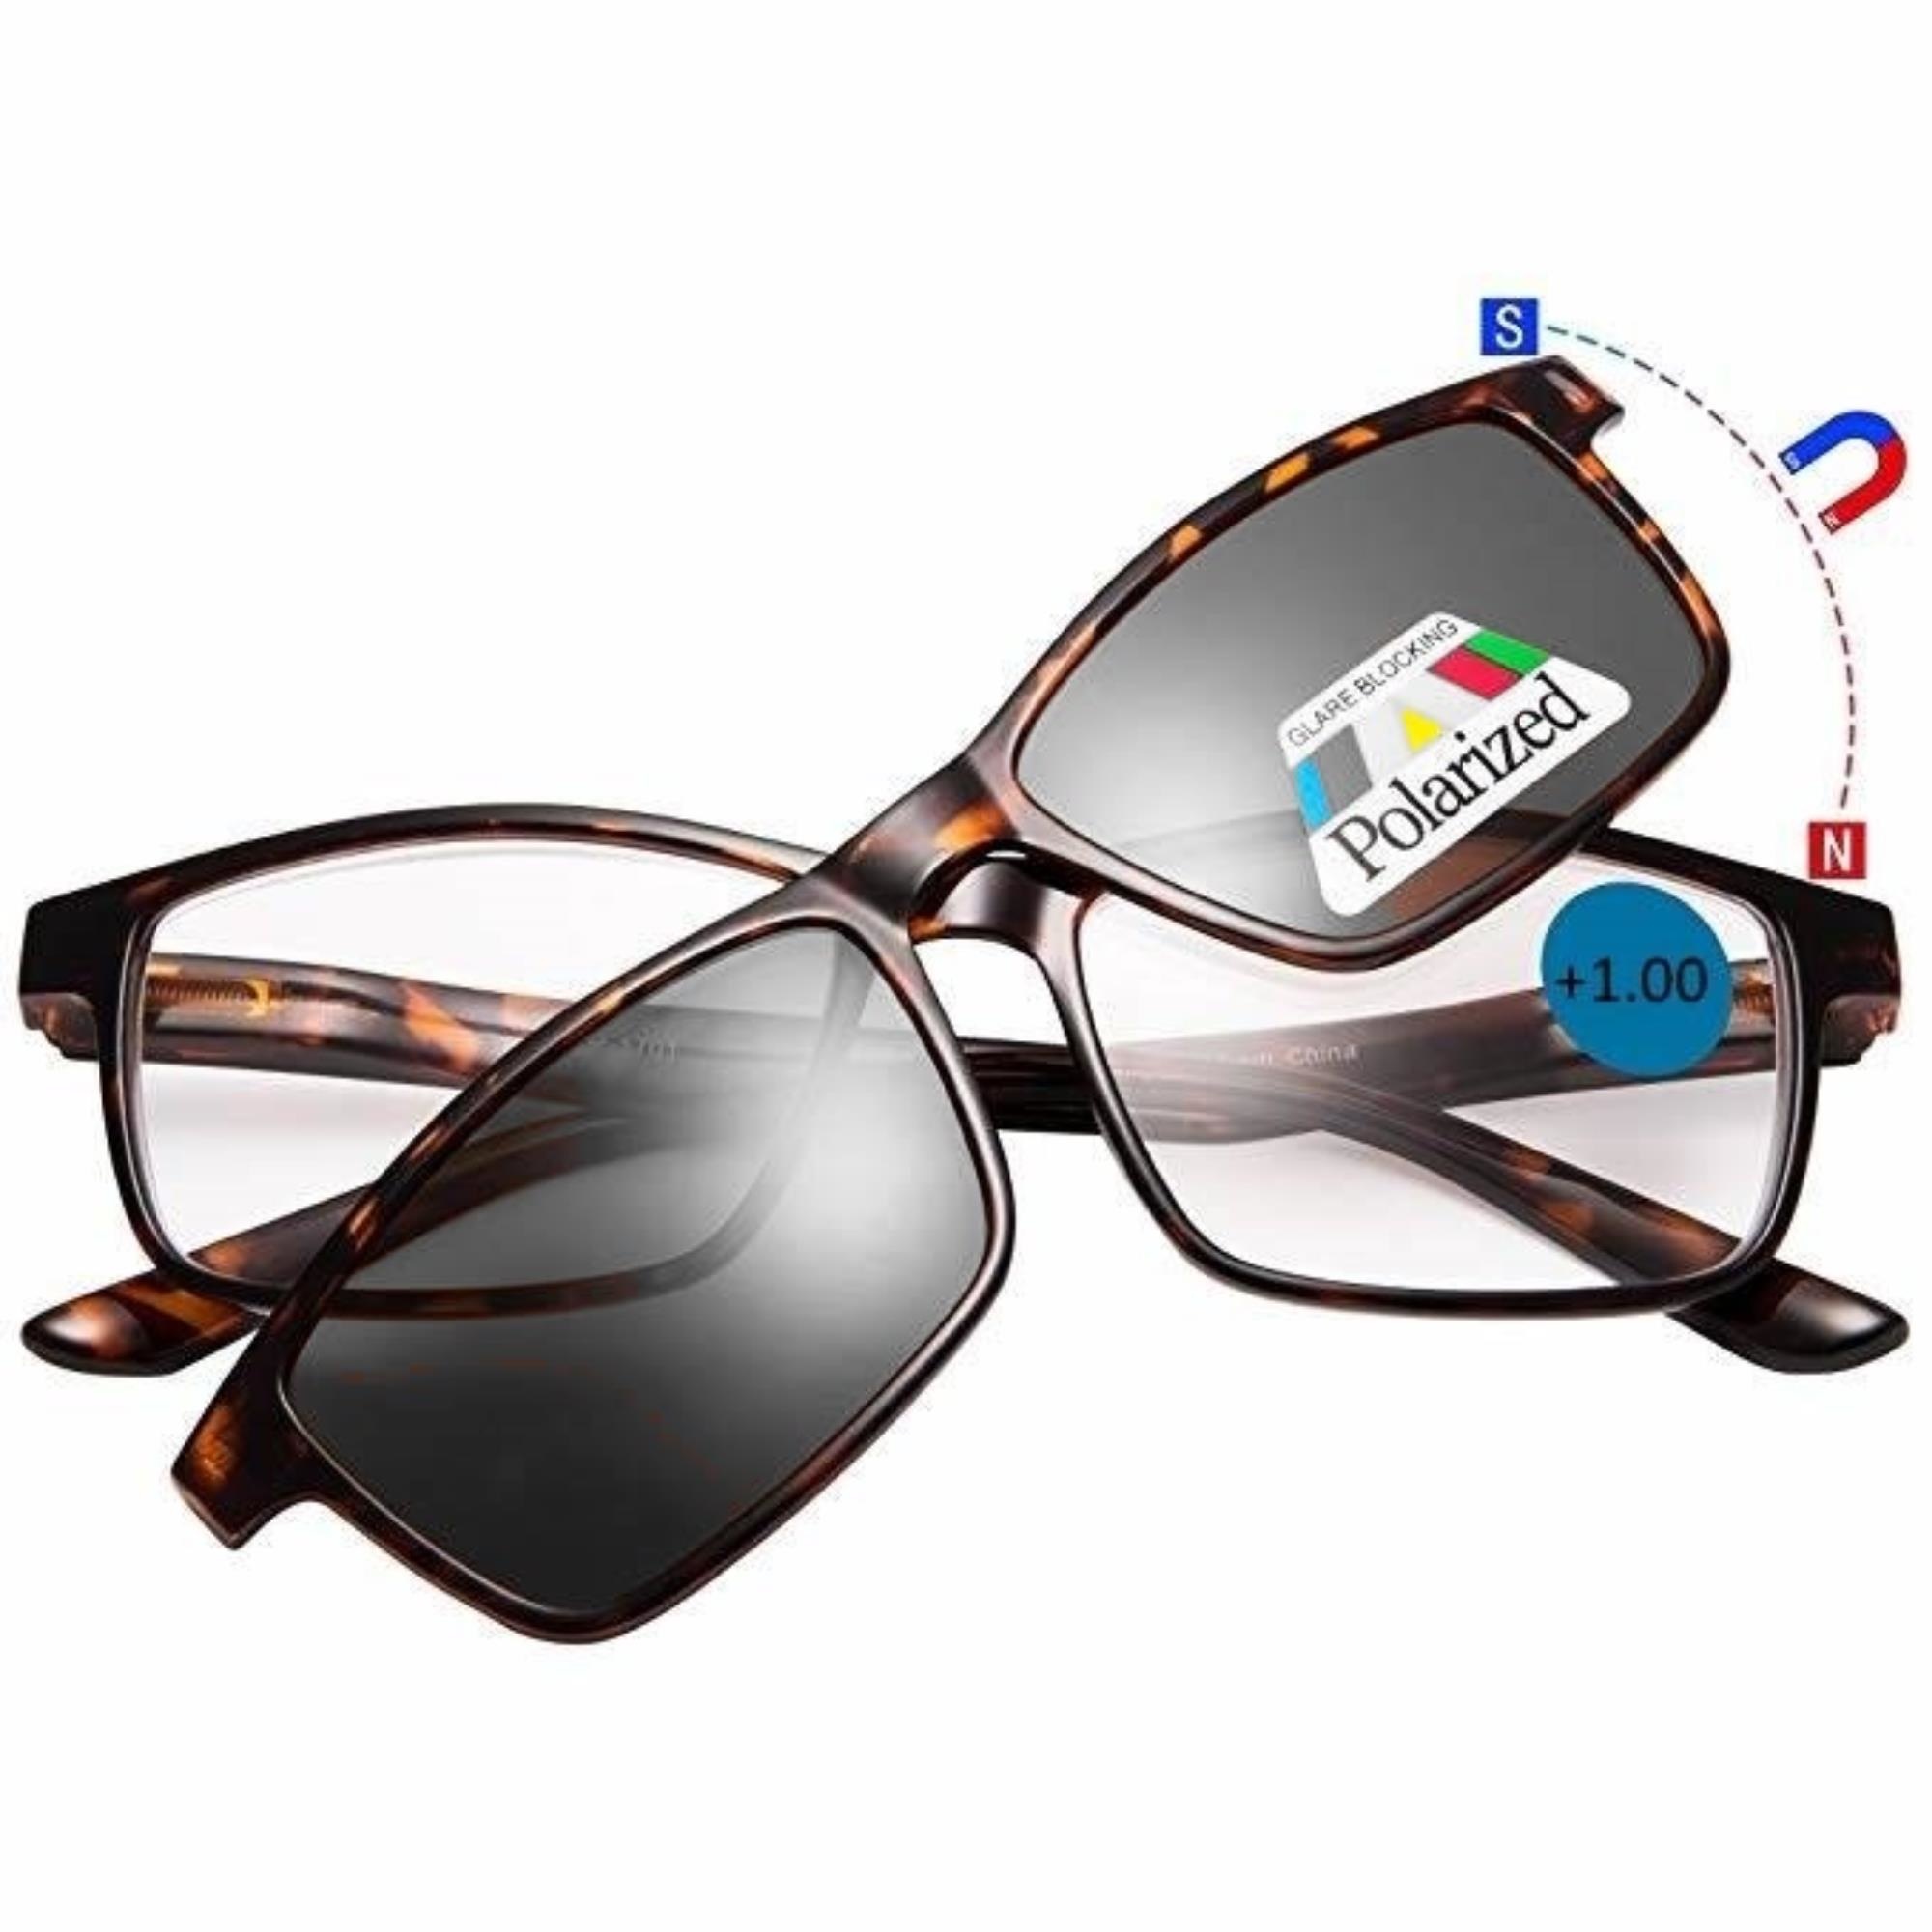 Oude man Ontwaken Rechtmatig Benson Leesbril met magneet zonnebril - Bruin - Sterkte +2.00 kopen? -  2Cheap